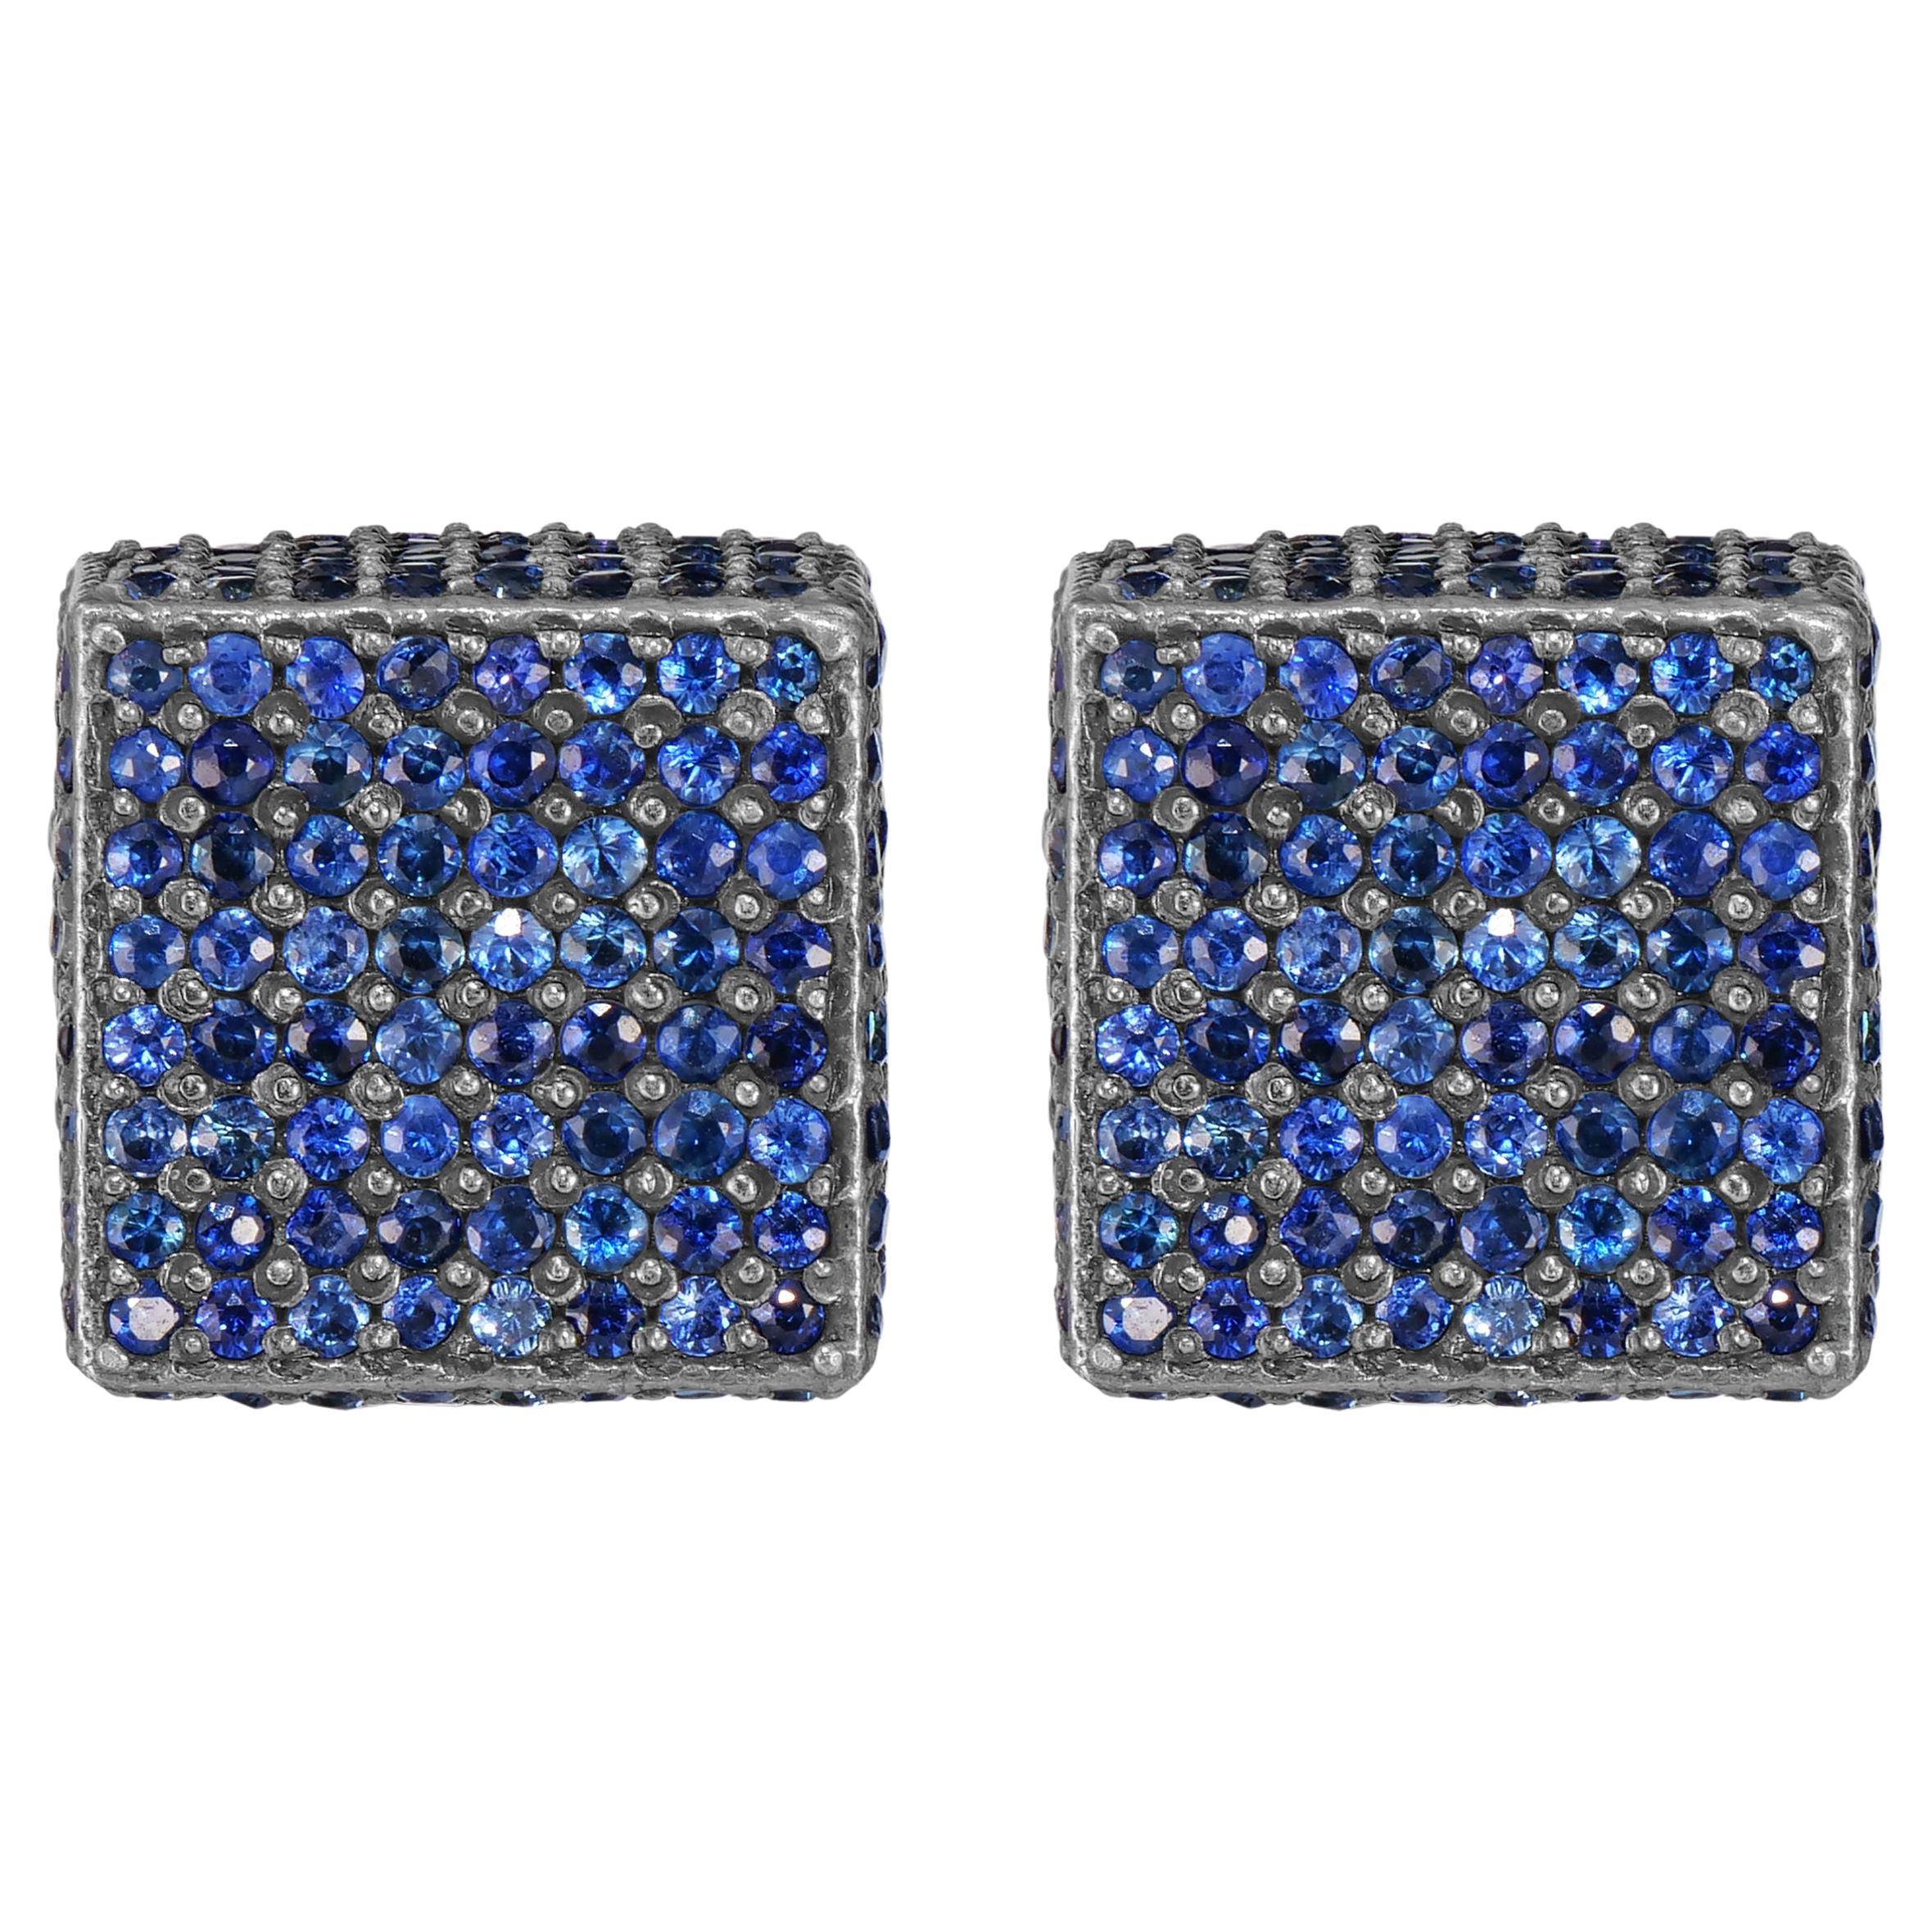 Sehen Sie sich den Victorian 11.8 Cttw. Ohrstecker mit blauem Saphir und Diamant - eine verspielte und raffinierte Ergänzung für Ihre Schmucksammlung.

Jeder Ohrring ist ein kleines Kunstwerk, das aus zwei würfelförmigen Würfeln besteht, die bis zur